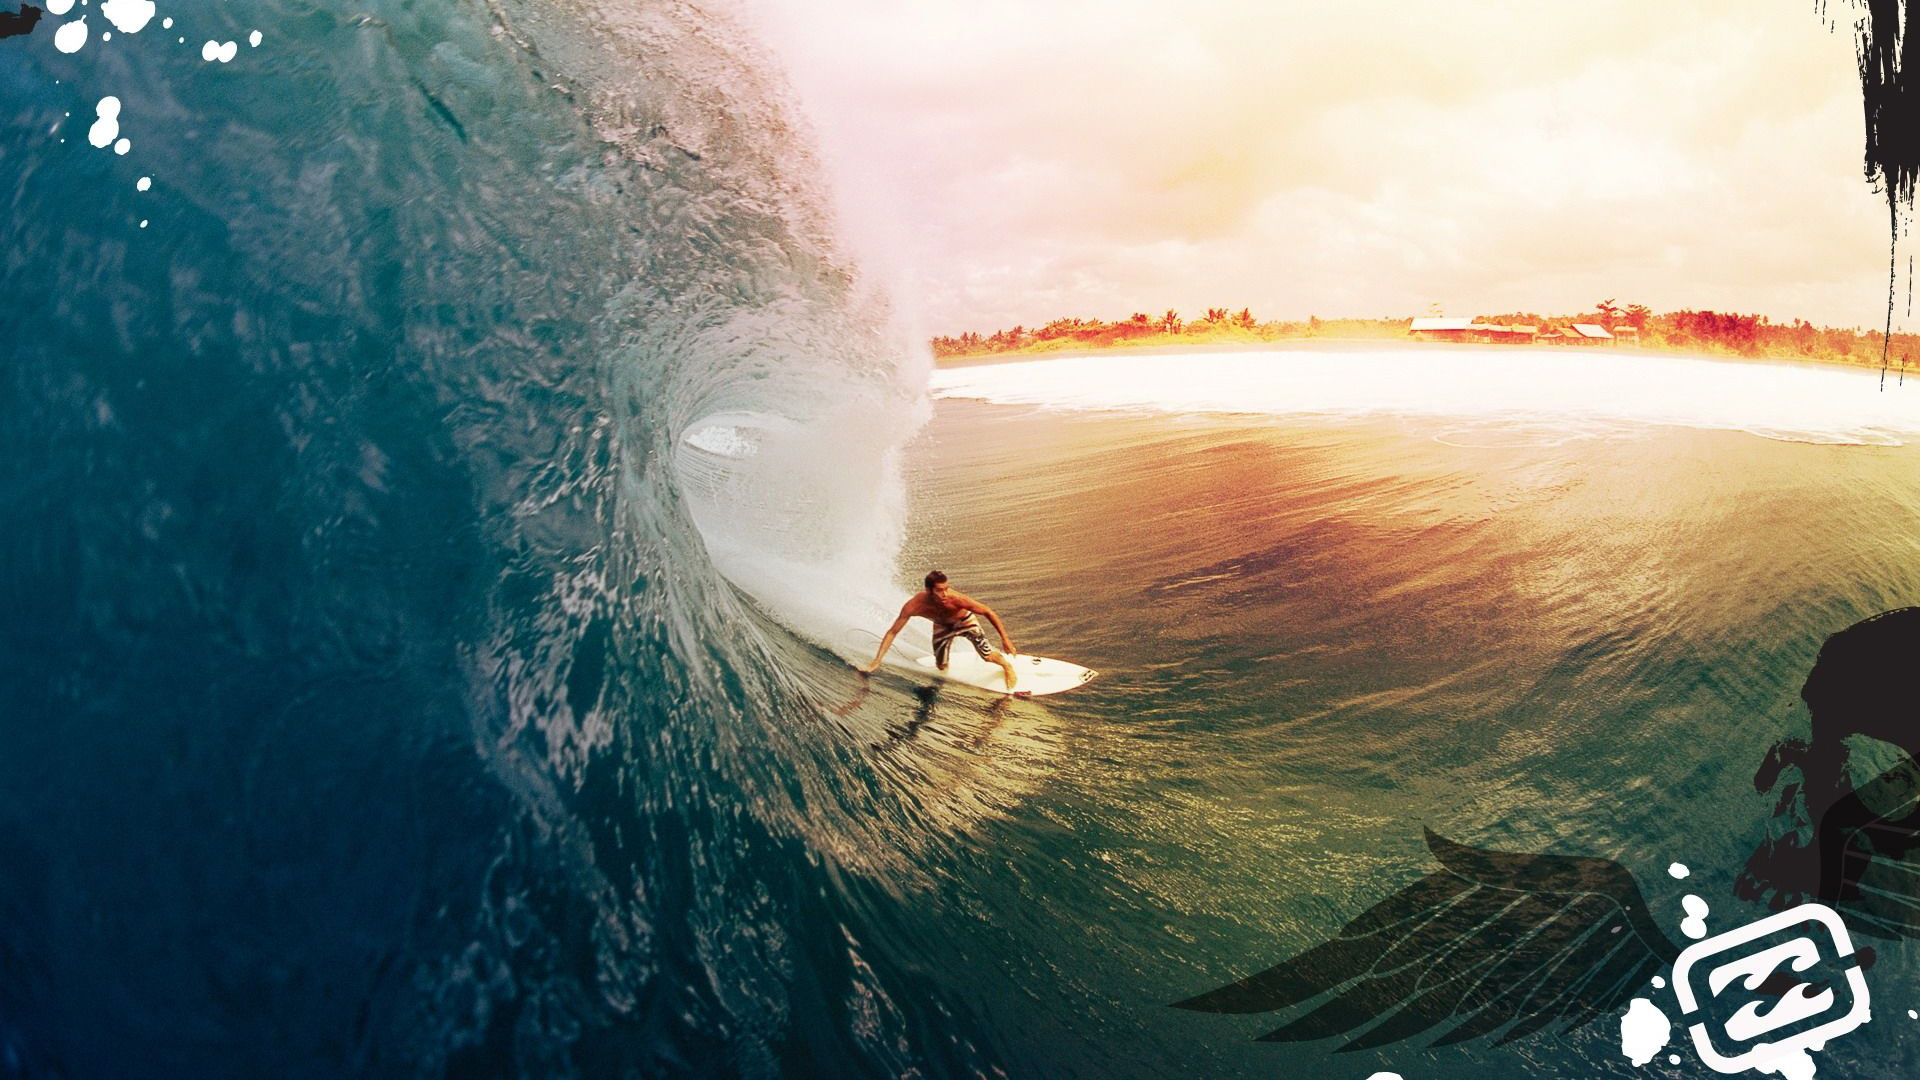 Surfer Surfing 1080p Full HD Wallpaper